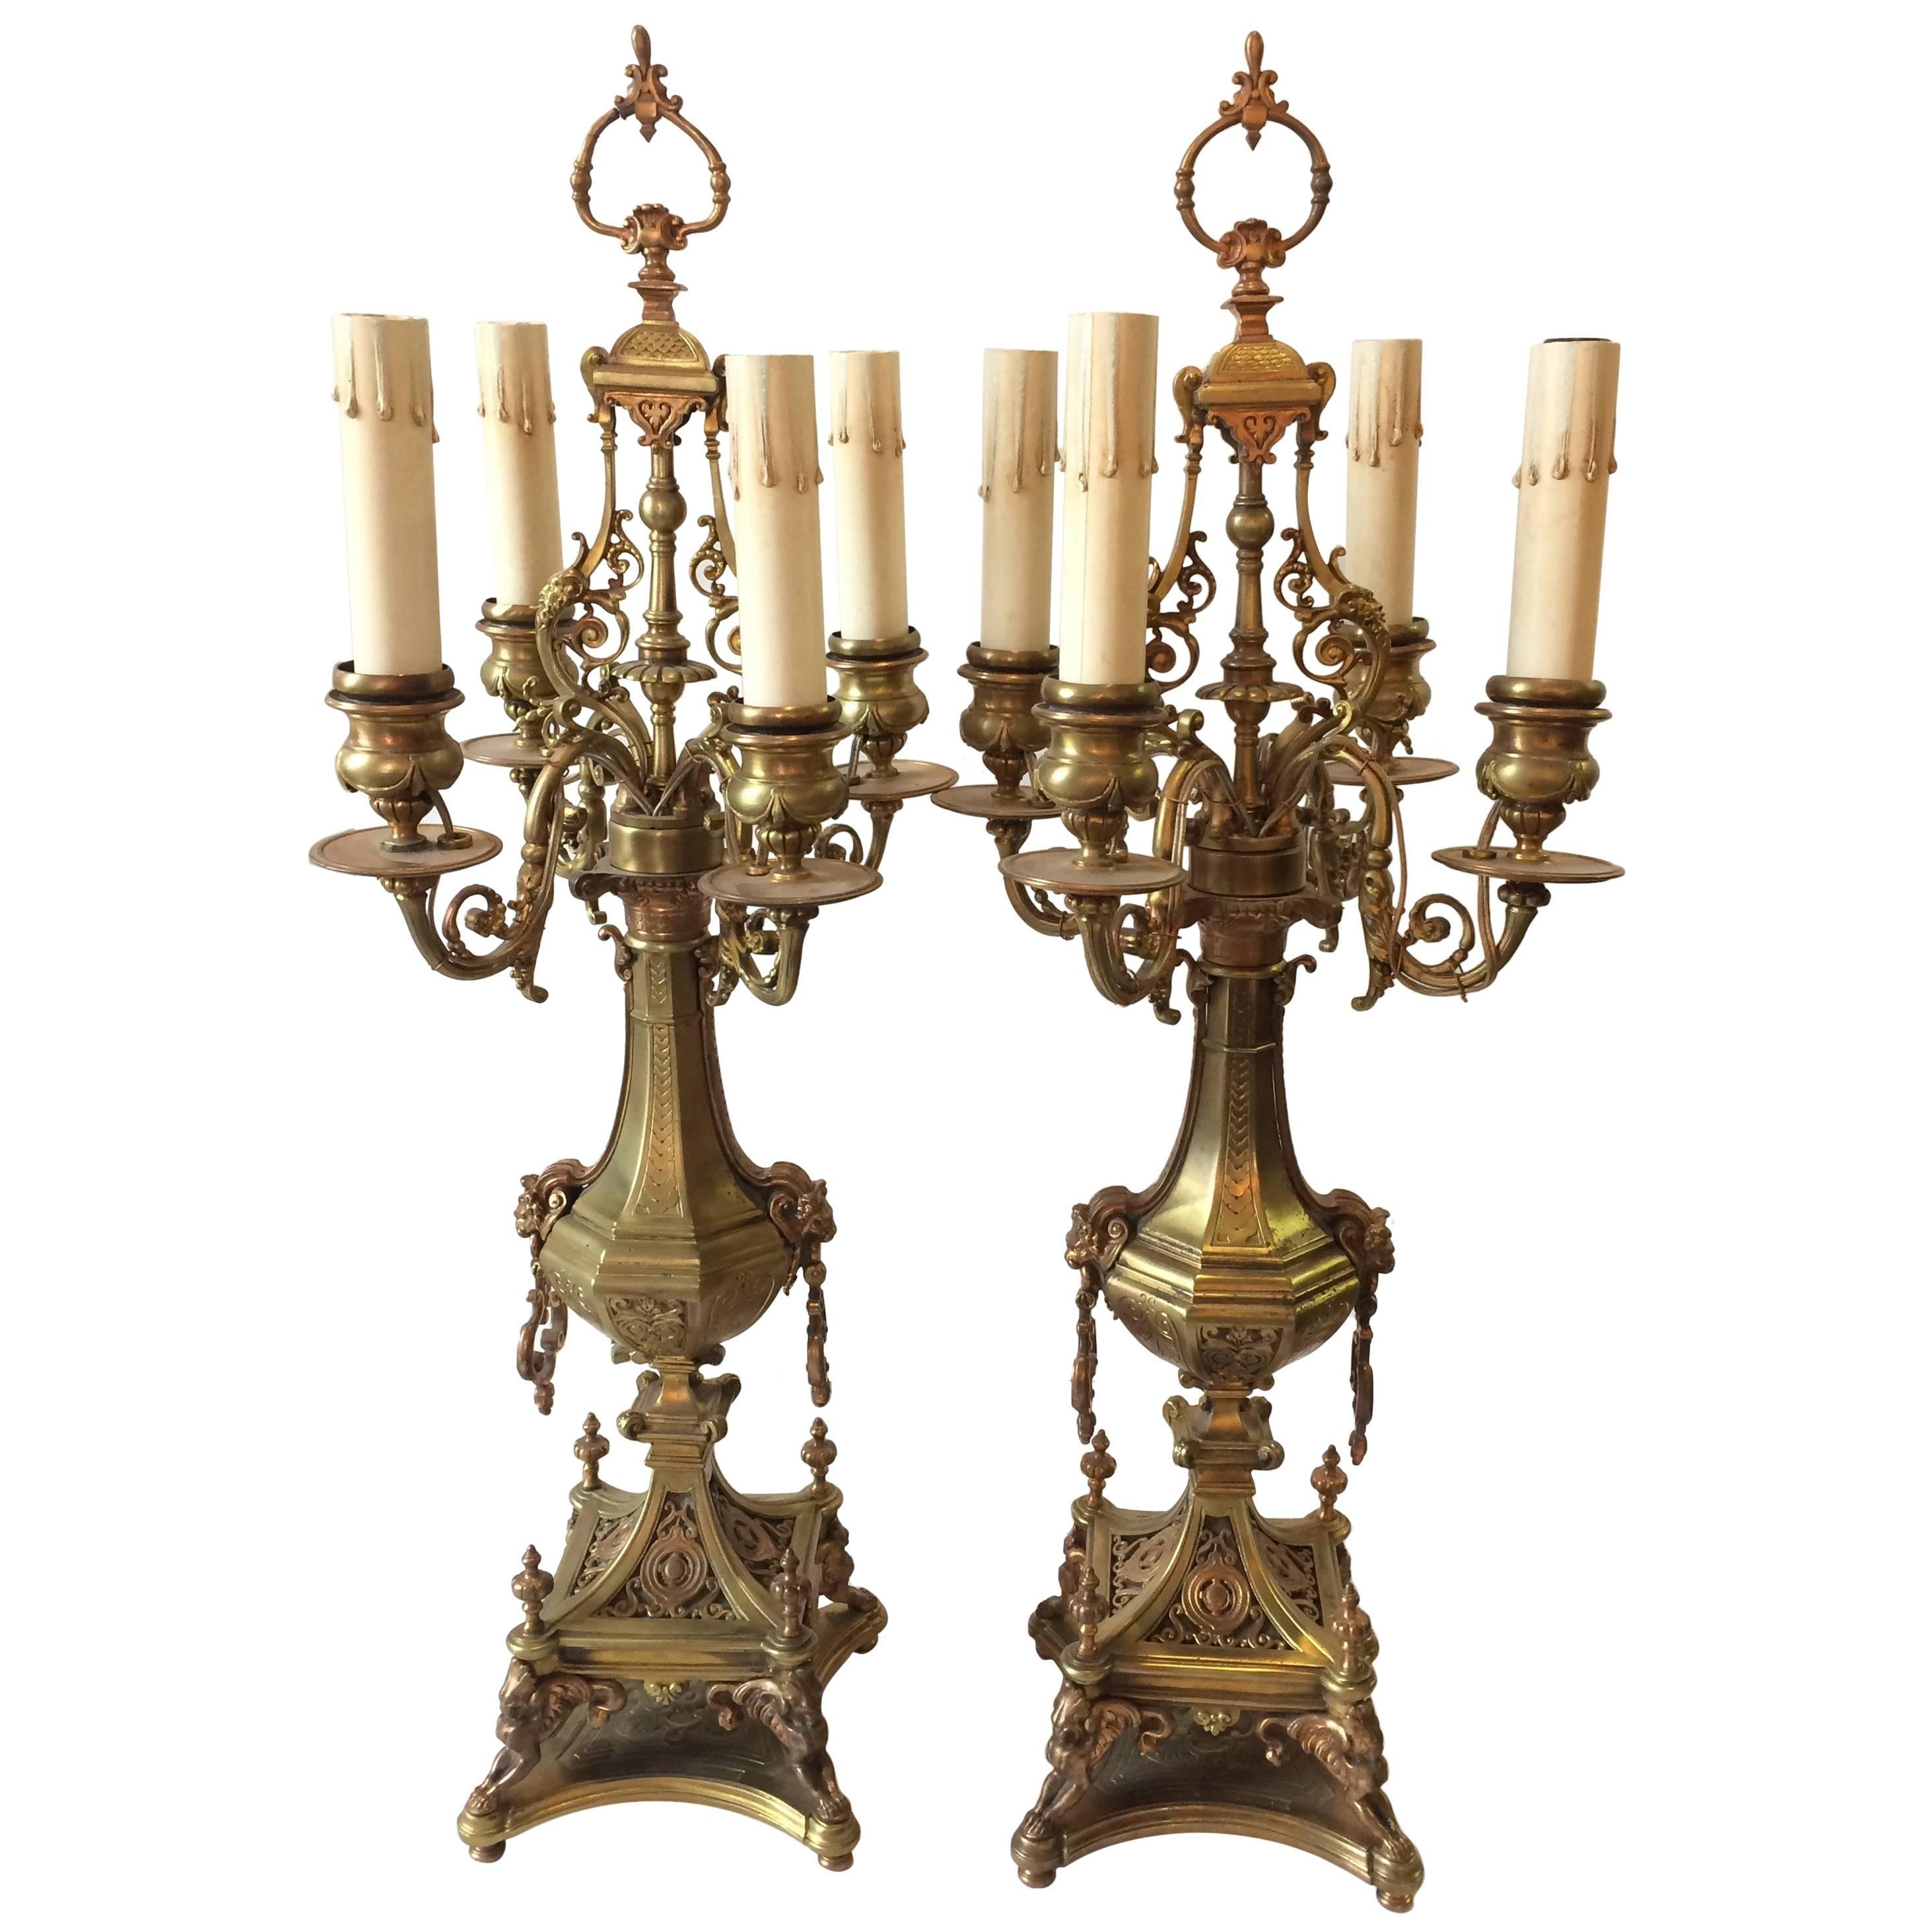 Paire de candélabres en bronze de style néo-renaissance d'une élégance suprême